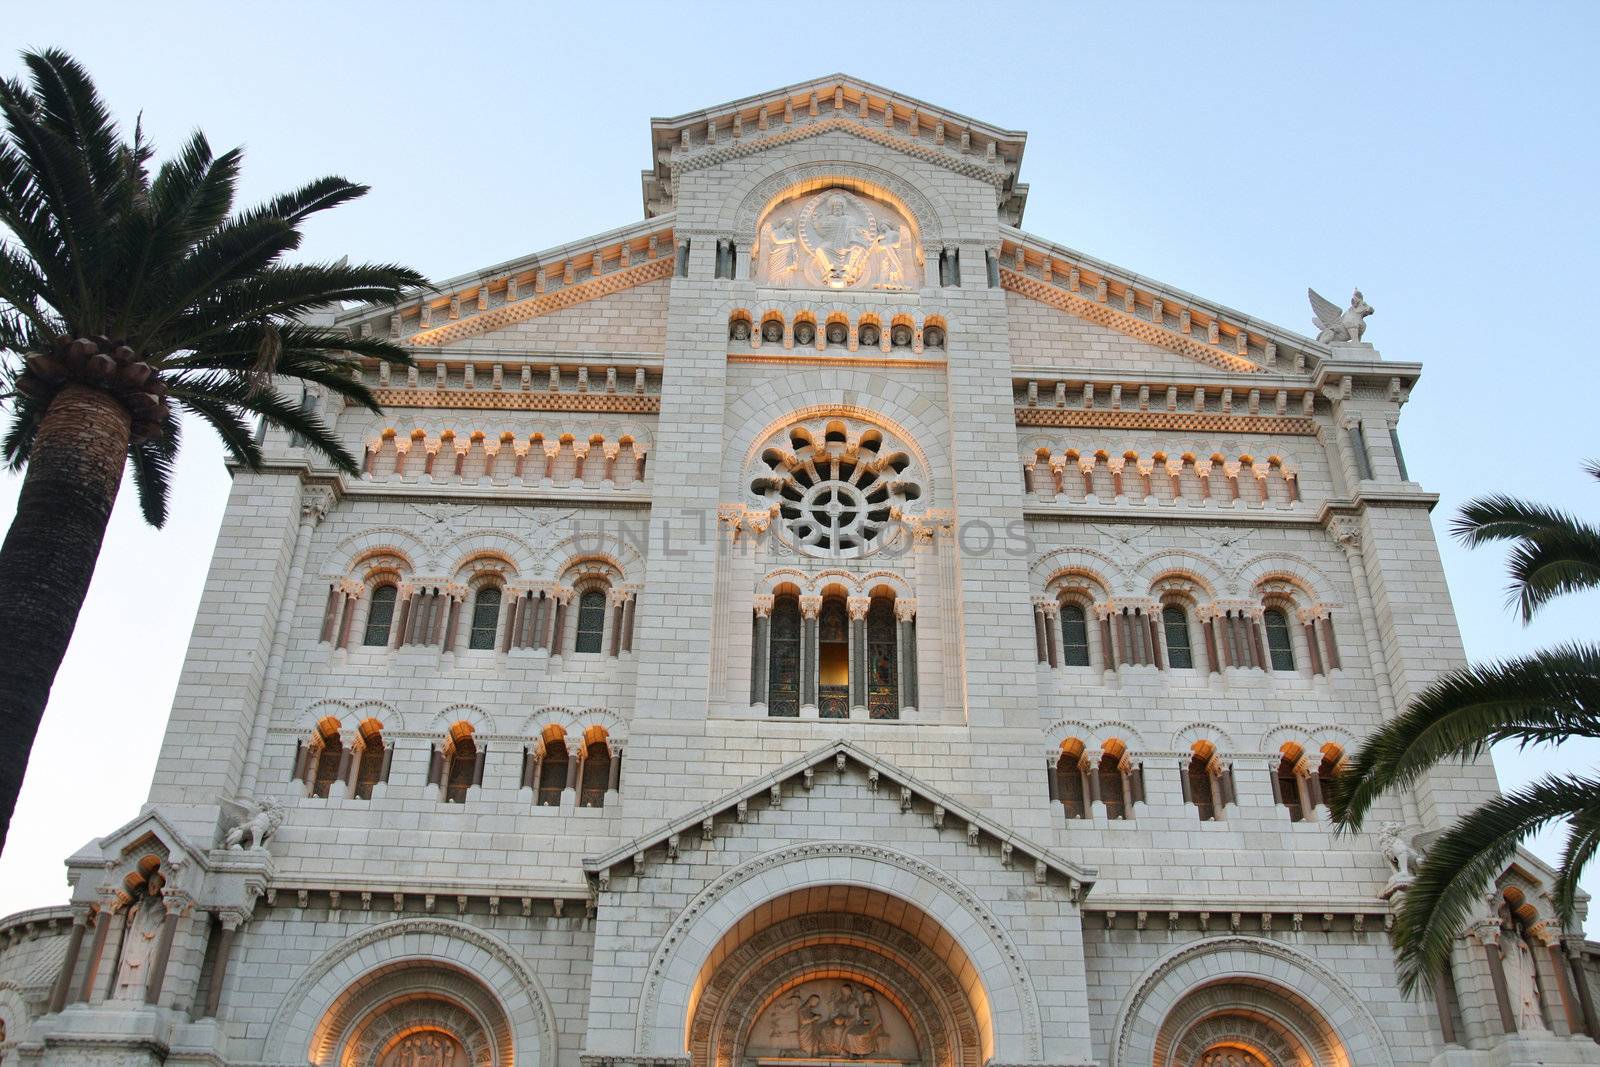 View of Catedral del Principado de Monaco